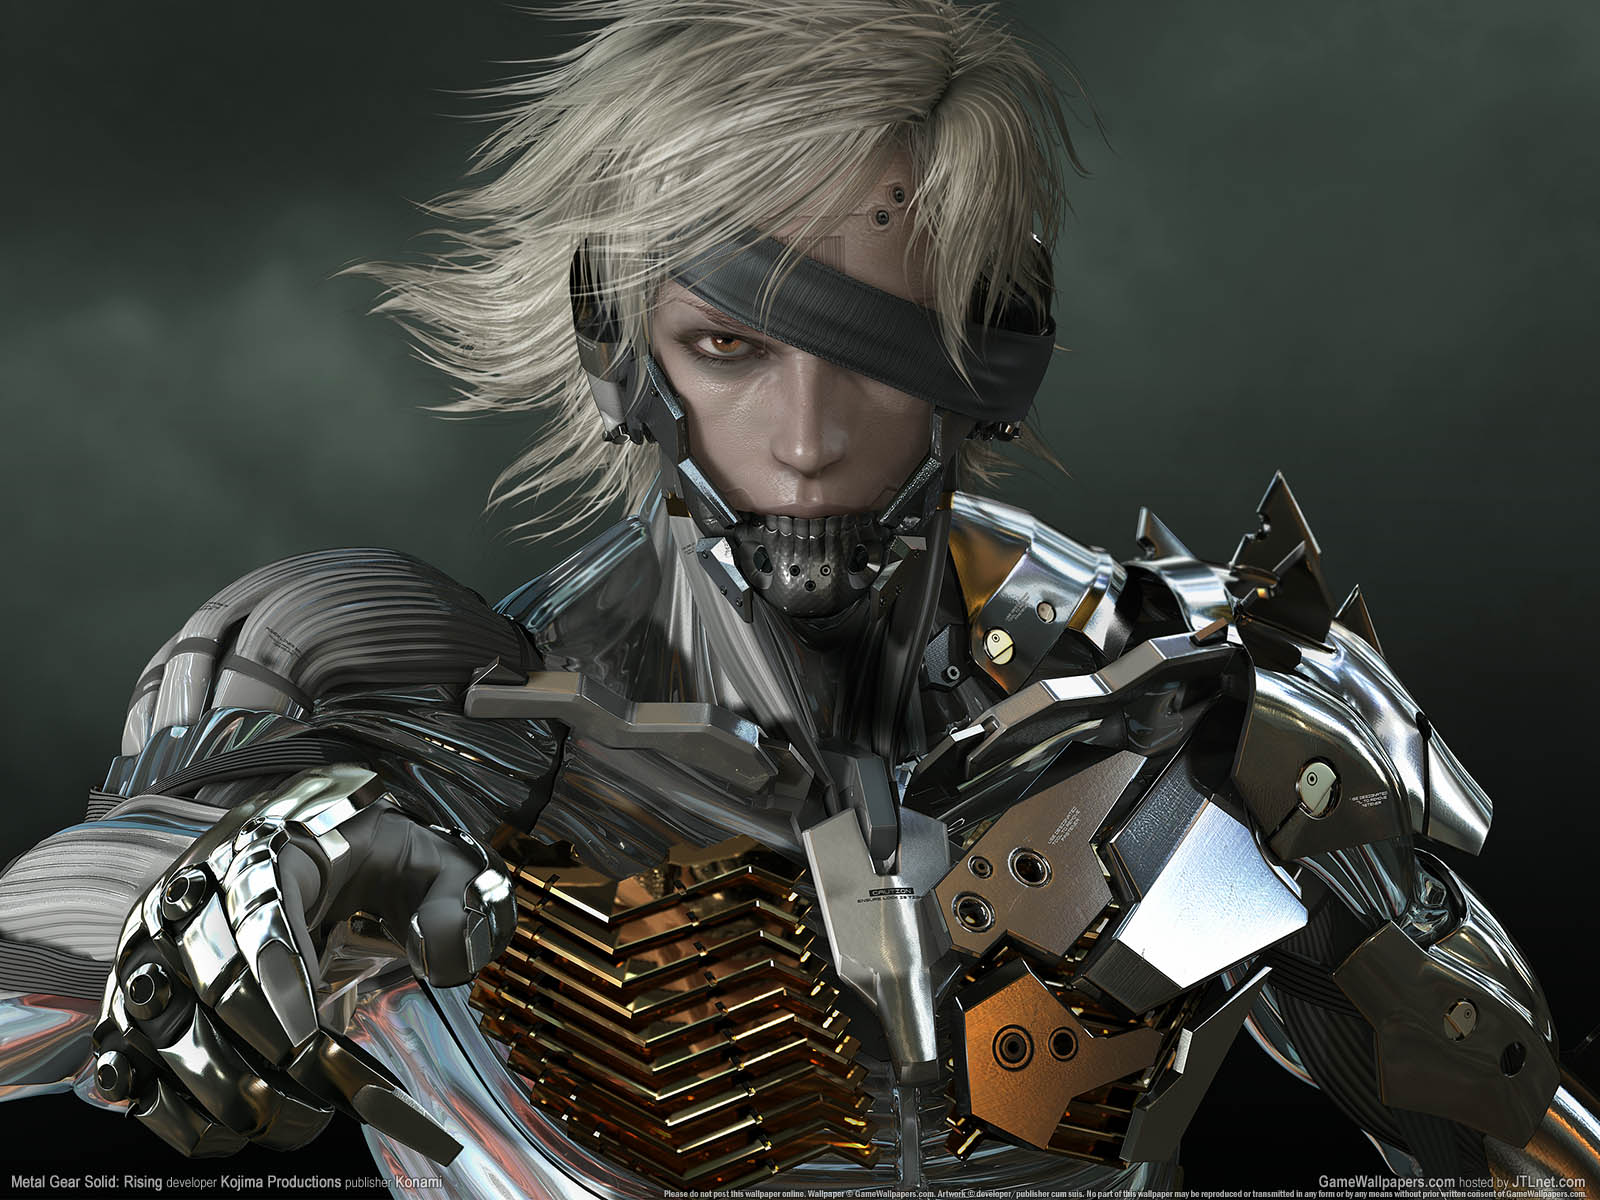 Metal Gear Rising: Revengeanceνmmer=02 achtergrond  1600x1200